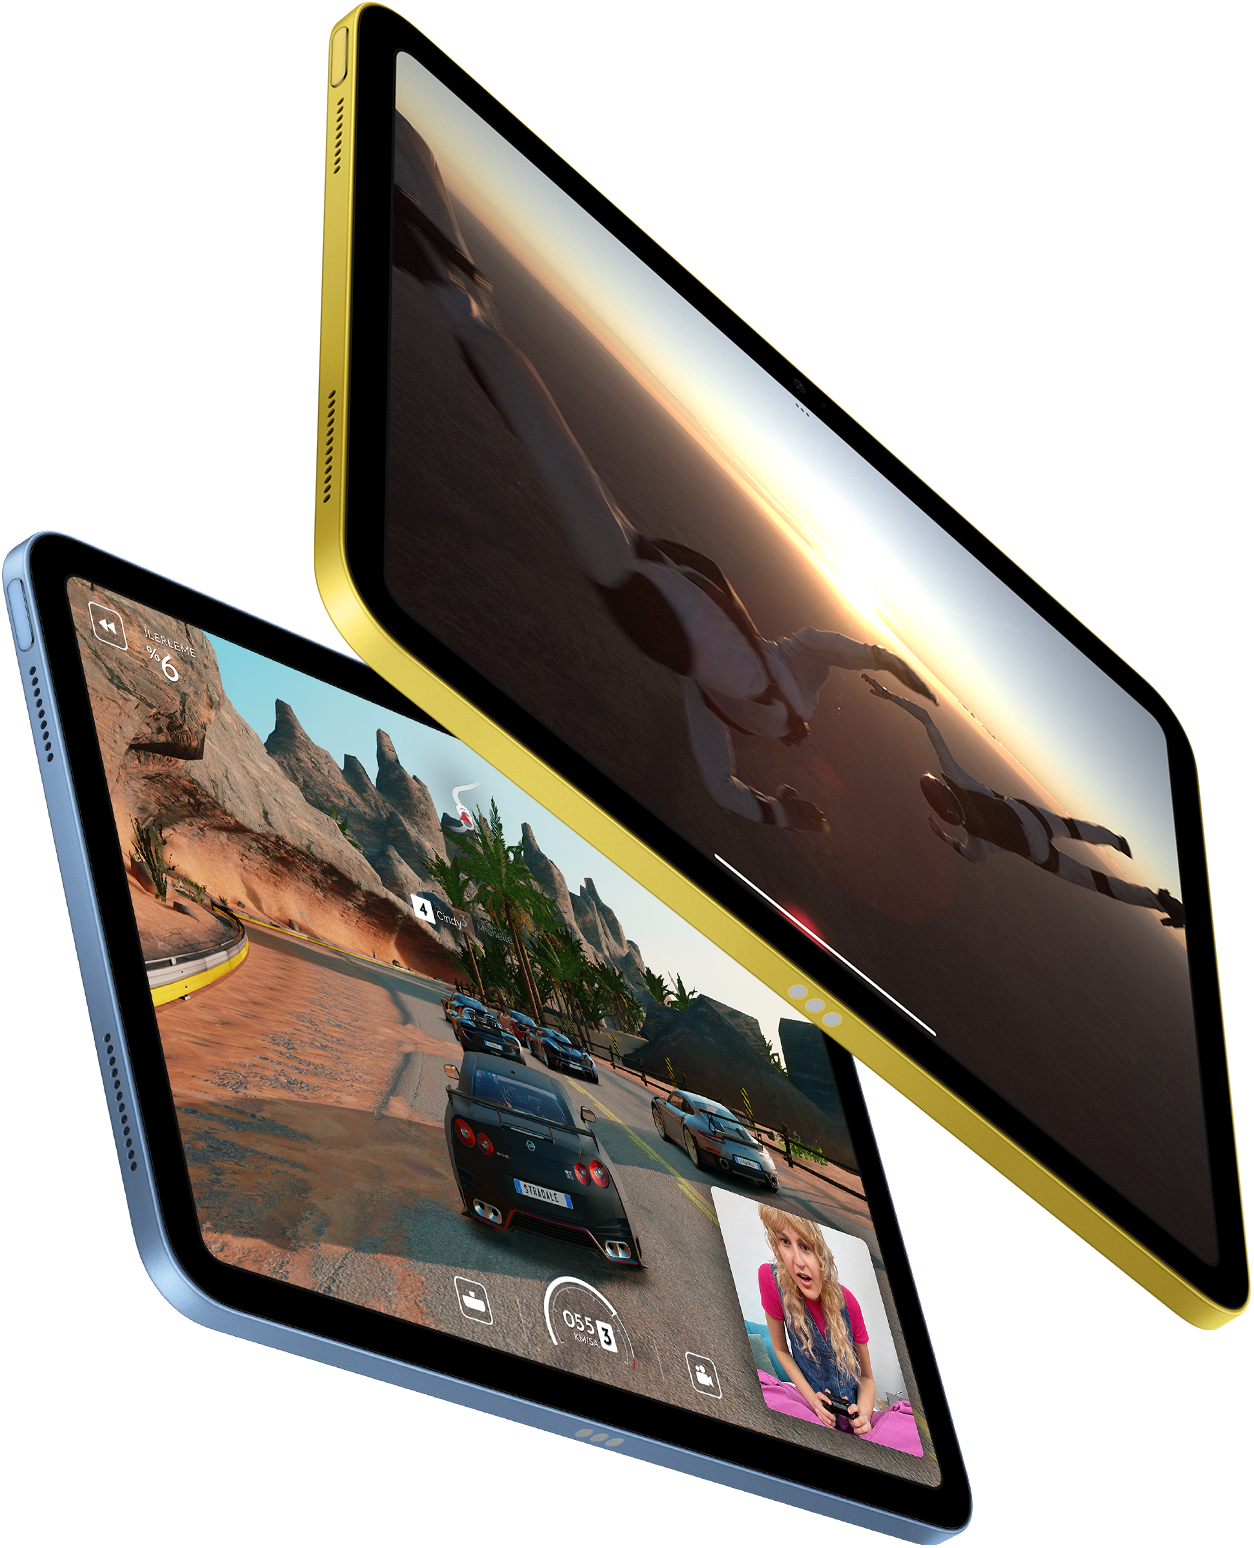 iPad’de Apple TV+ ve SharePlay oyun deneyimi gösteriliyor.